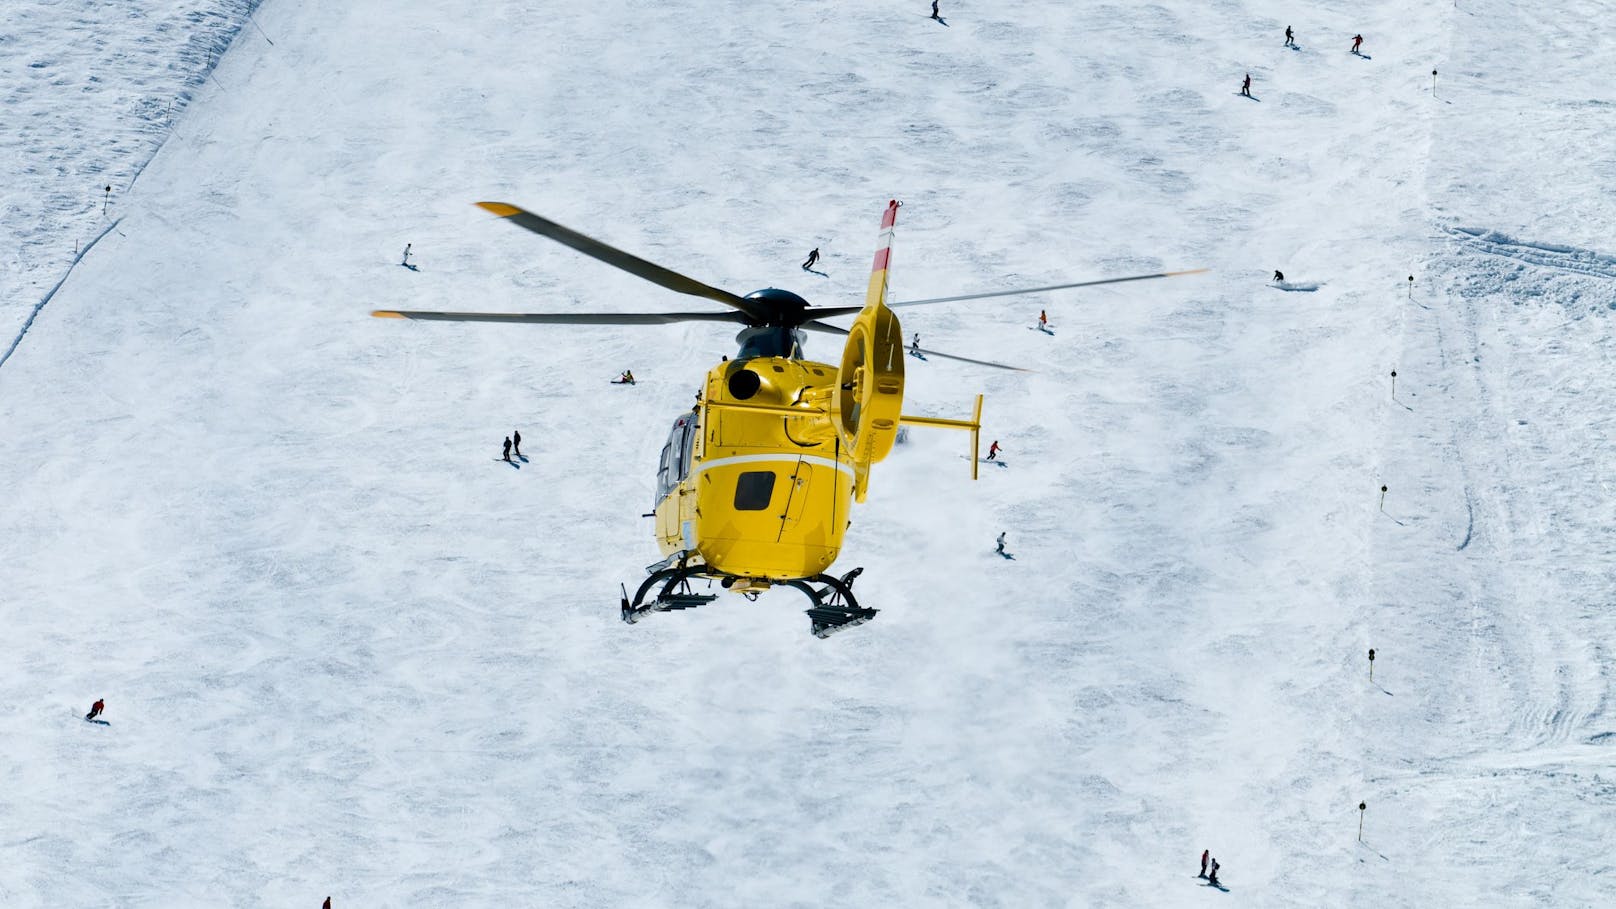 Skifahrer stirbt fast 2 Wochen nach Kollision im Spital